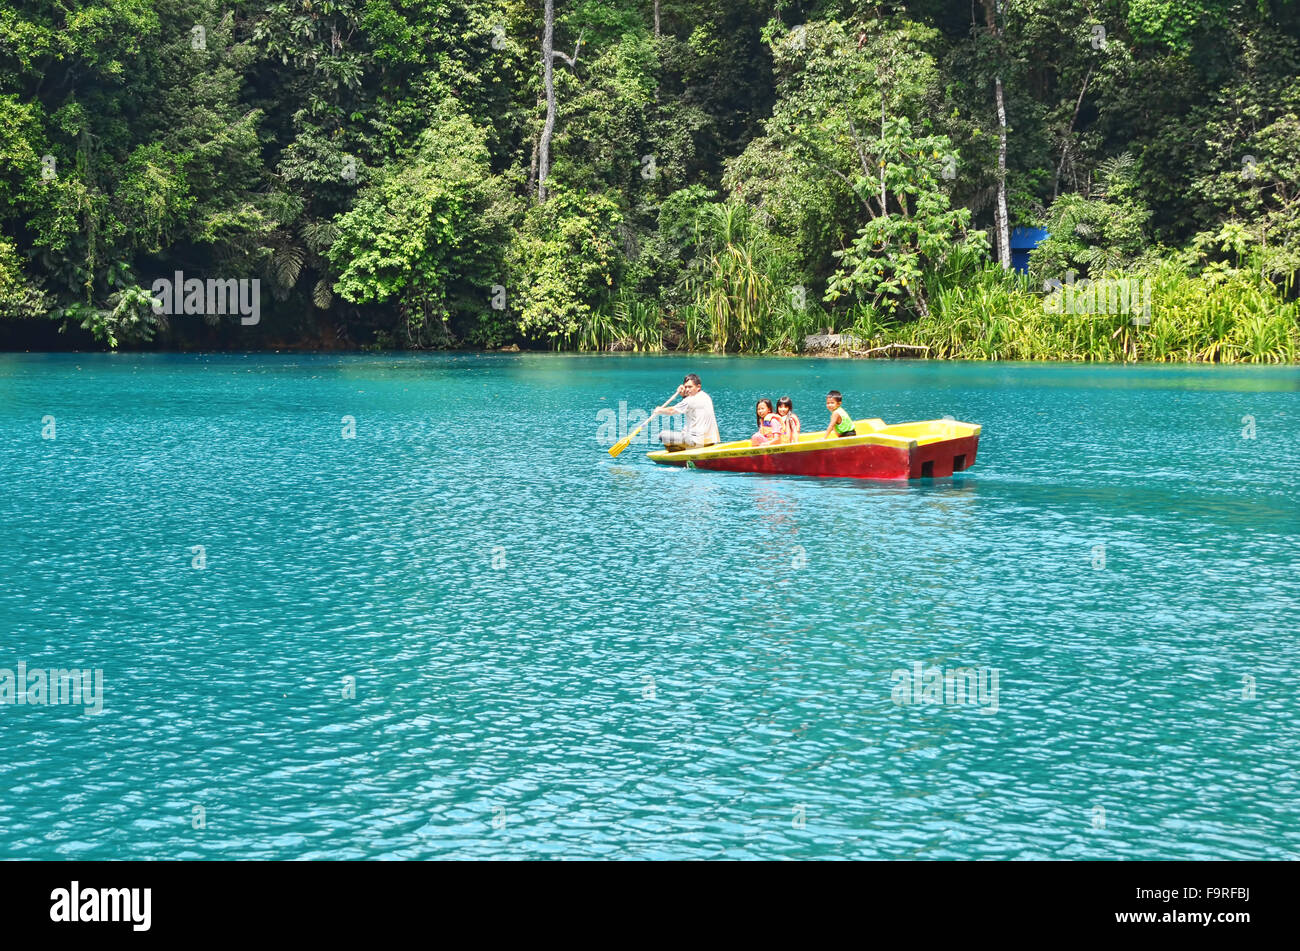 A boat in Labuan Cermin Lake Stock Photo